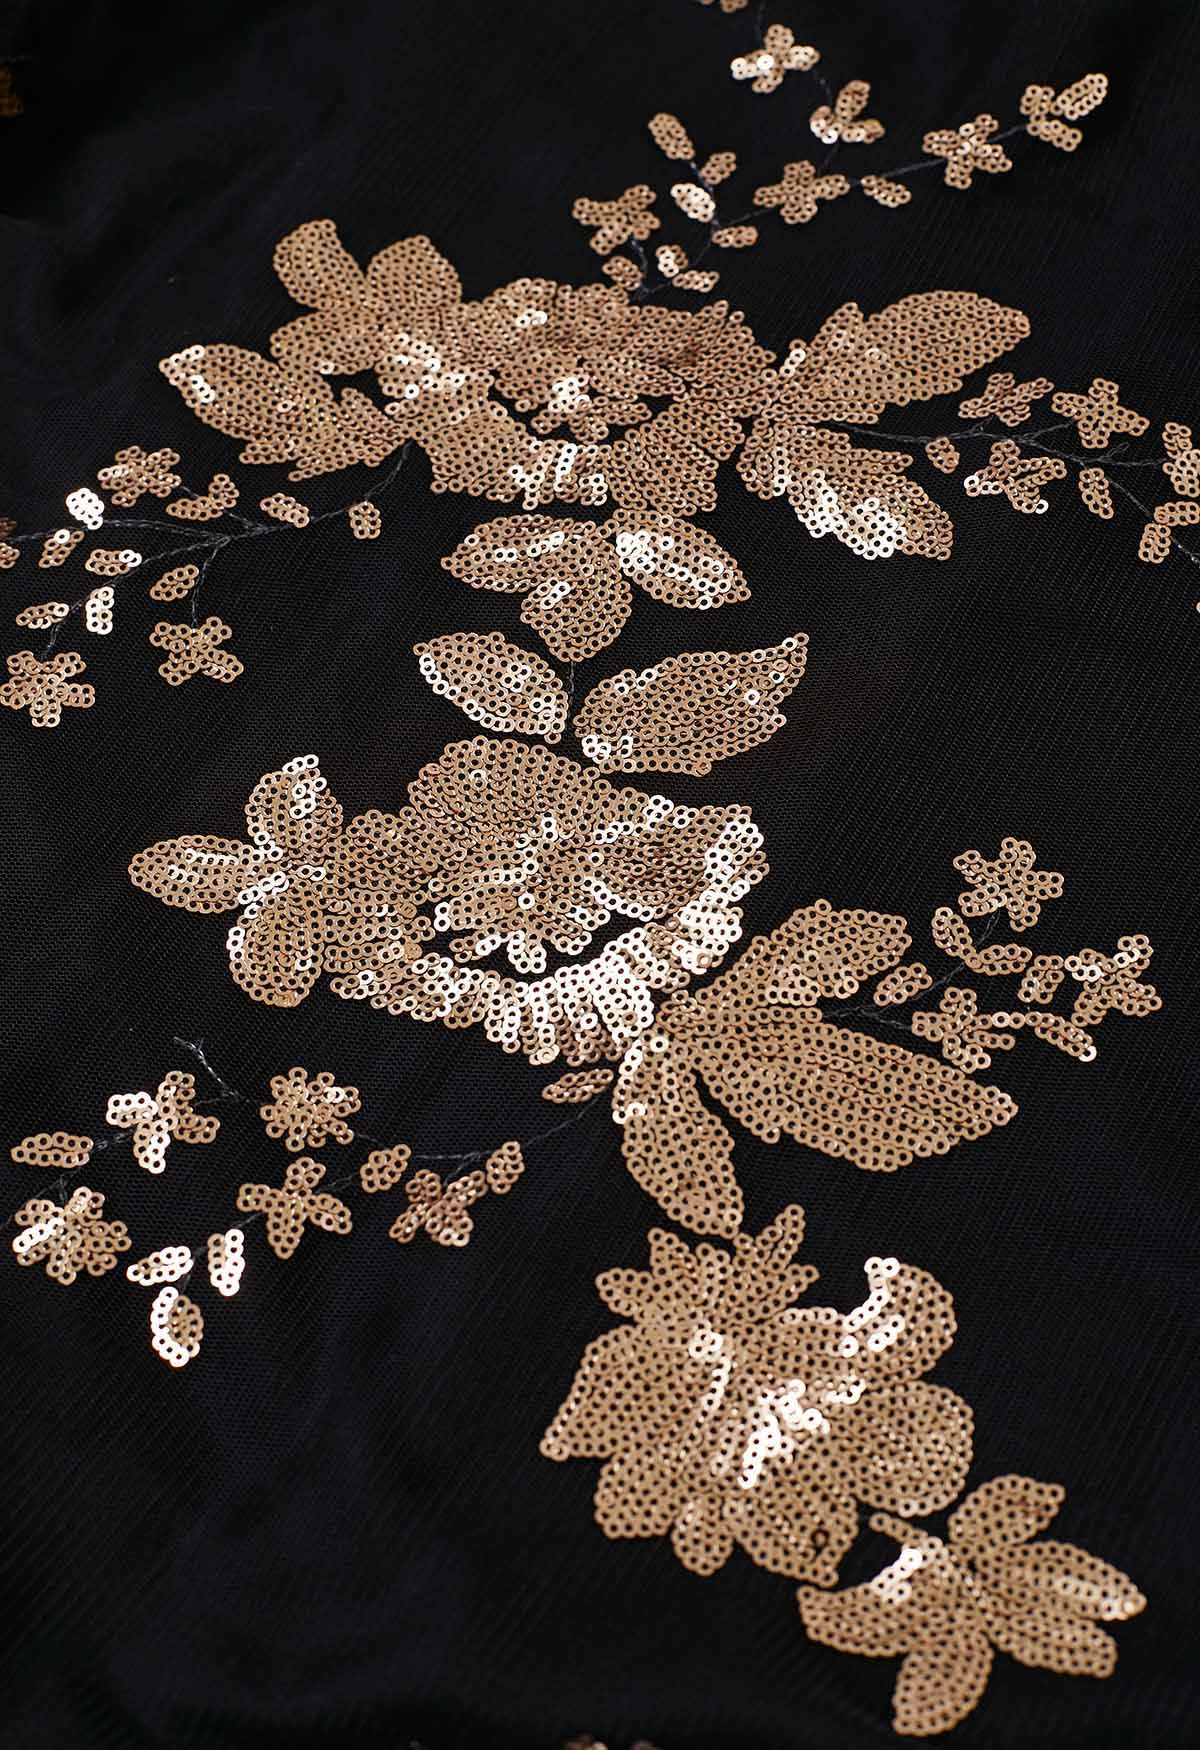 Cami-Kleid aus Tüll mit überkreuzten Blumen und Pailletten am Rücken